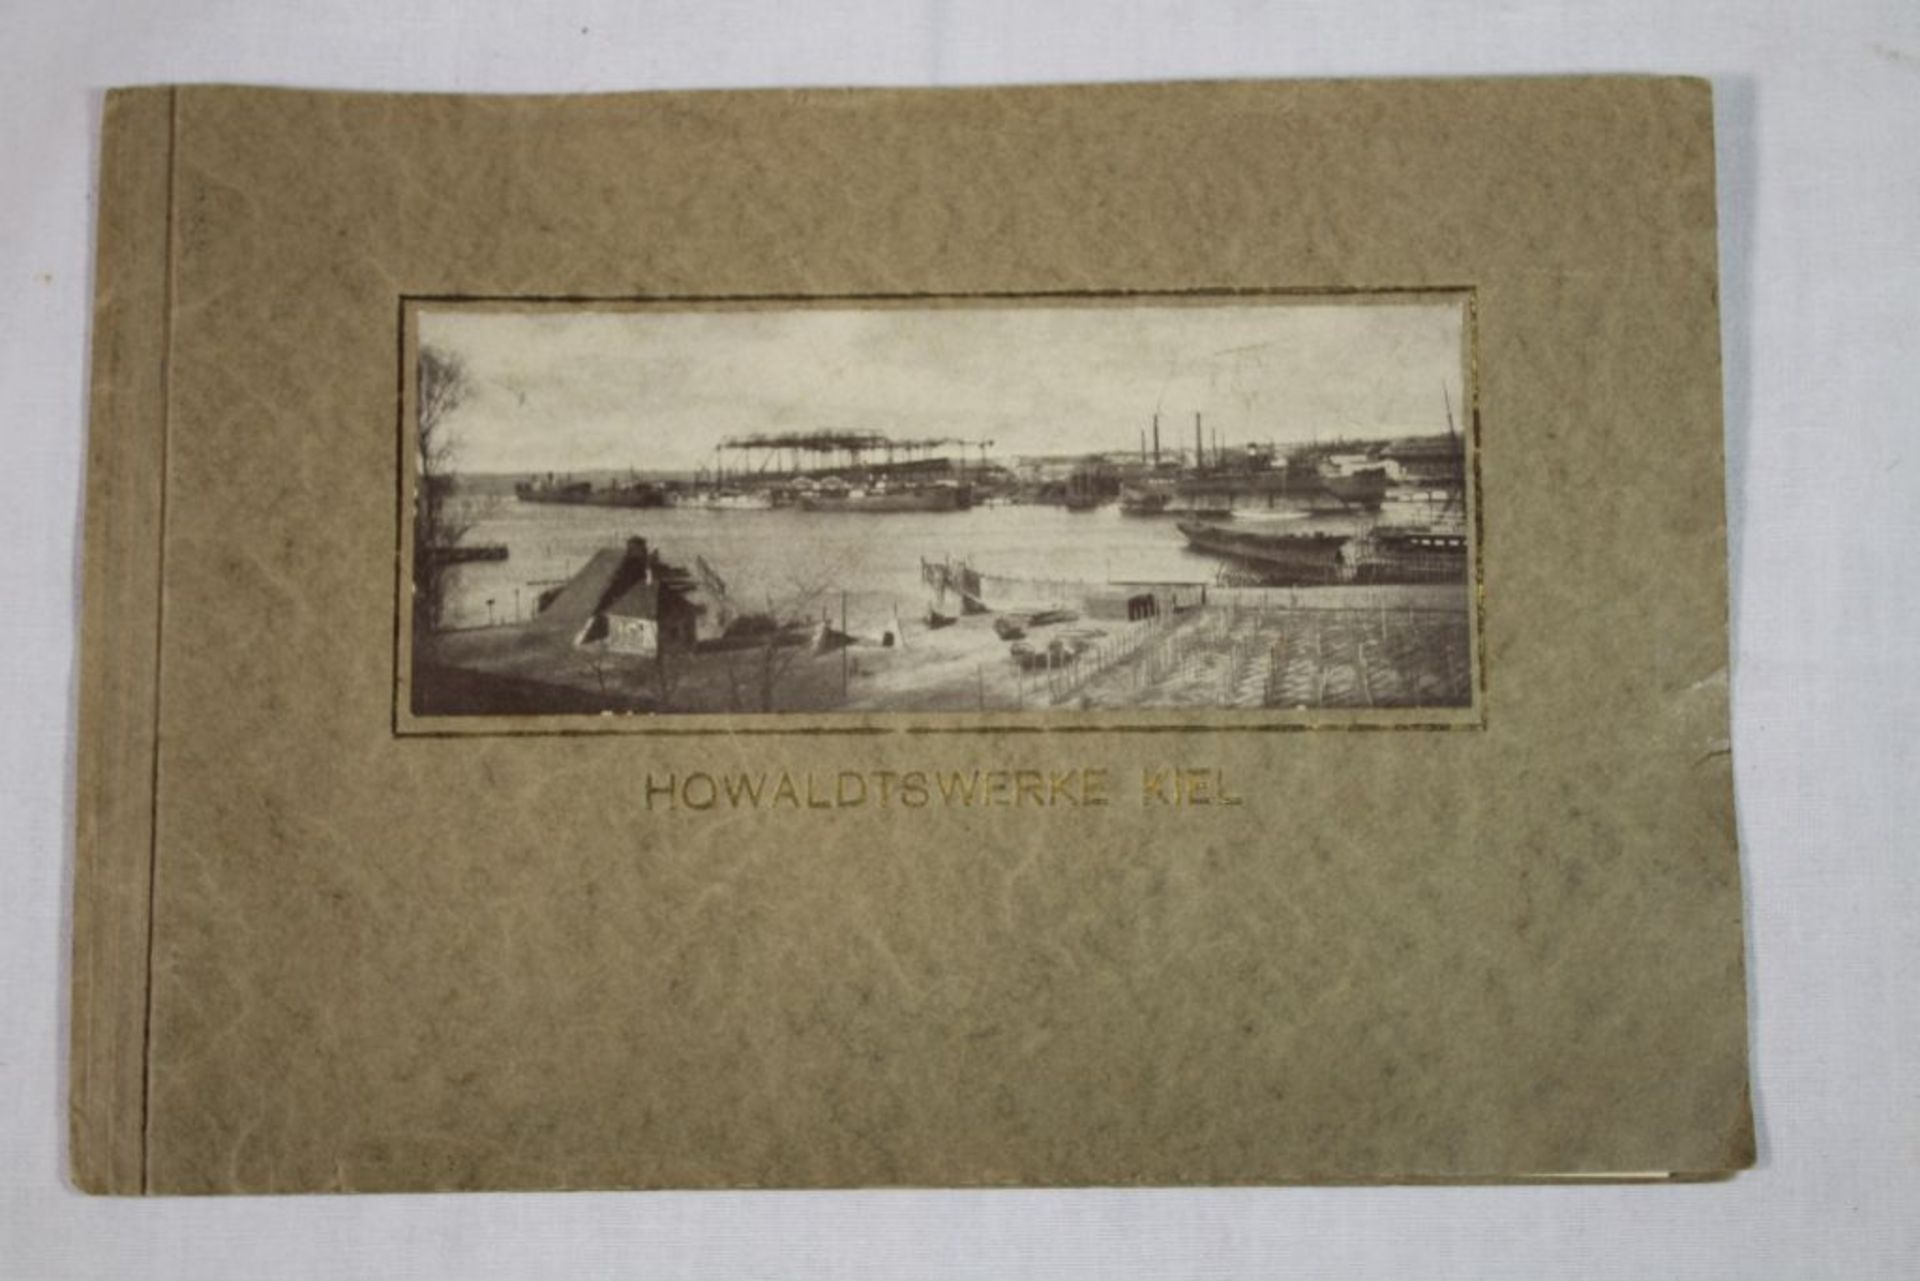 Bildband "Howaldtswerke Kiel" um 1900, in franz. Sprache.